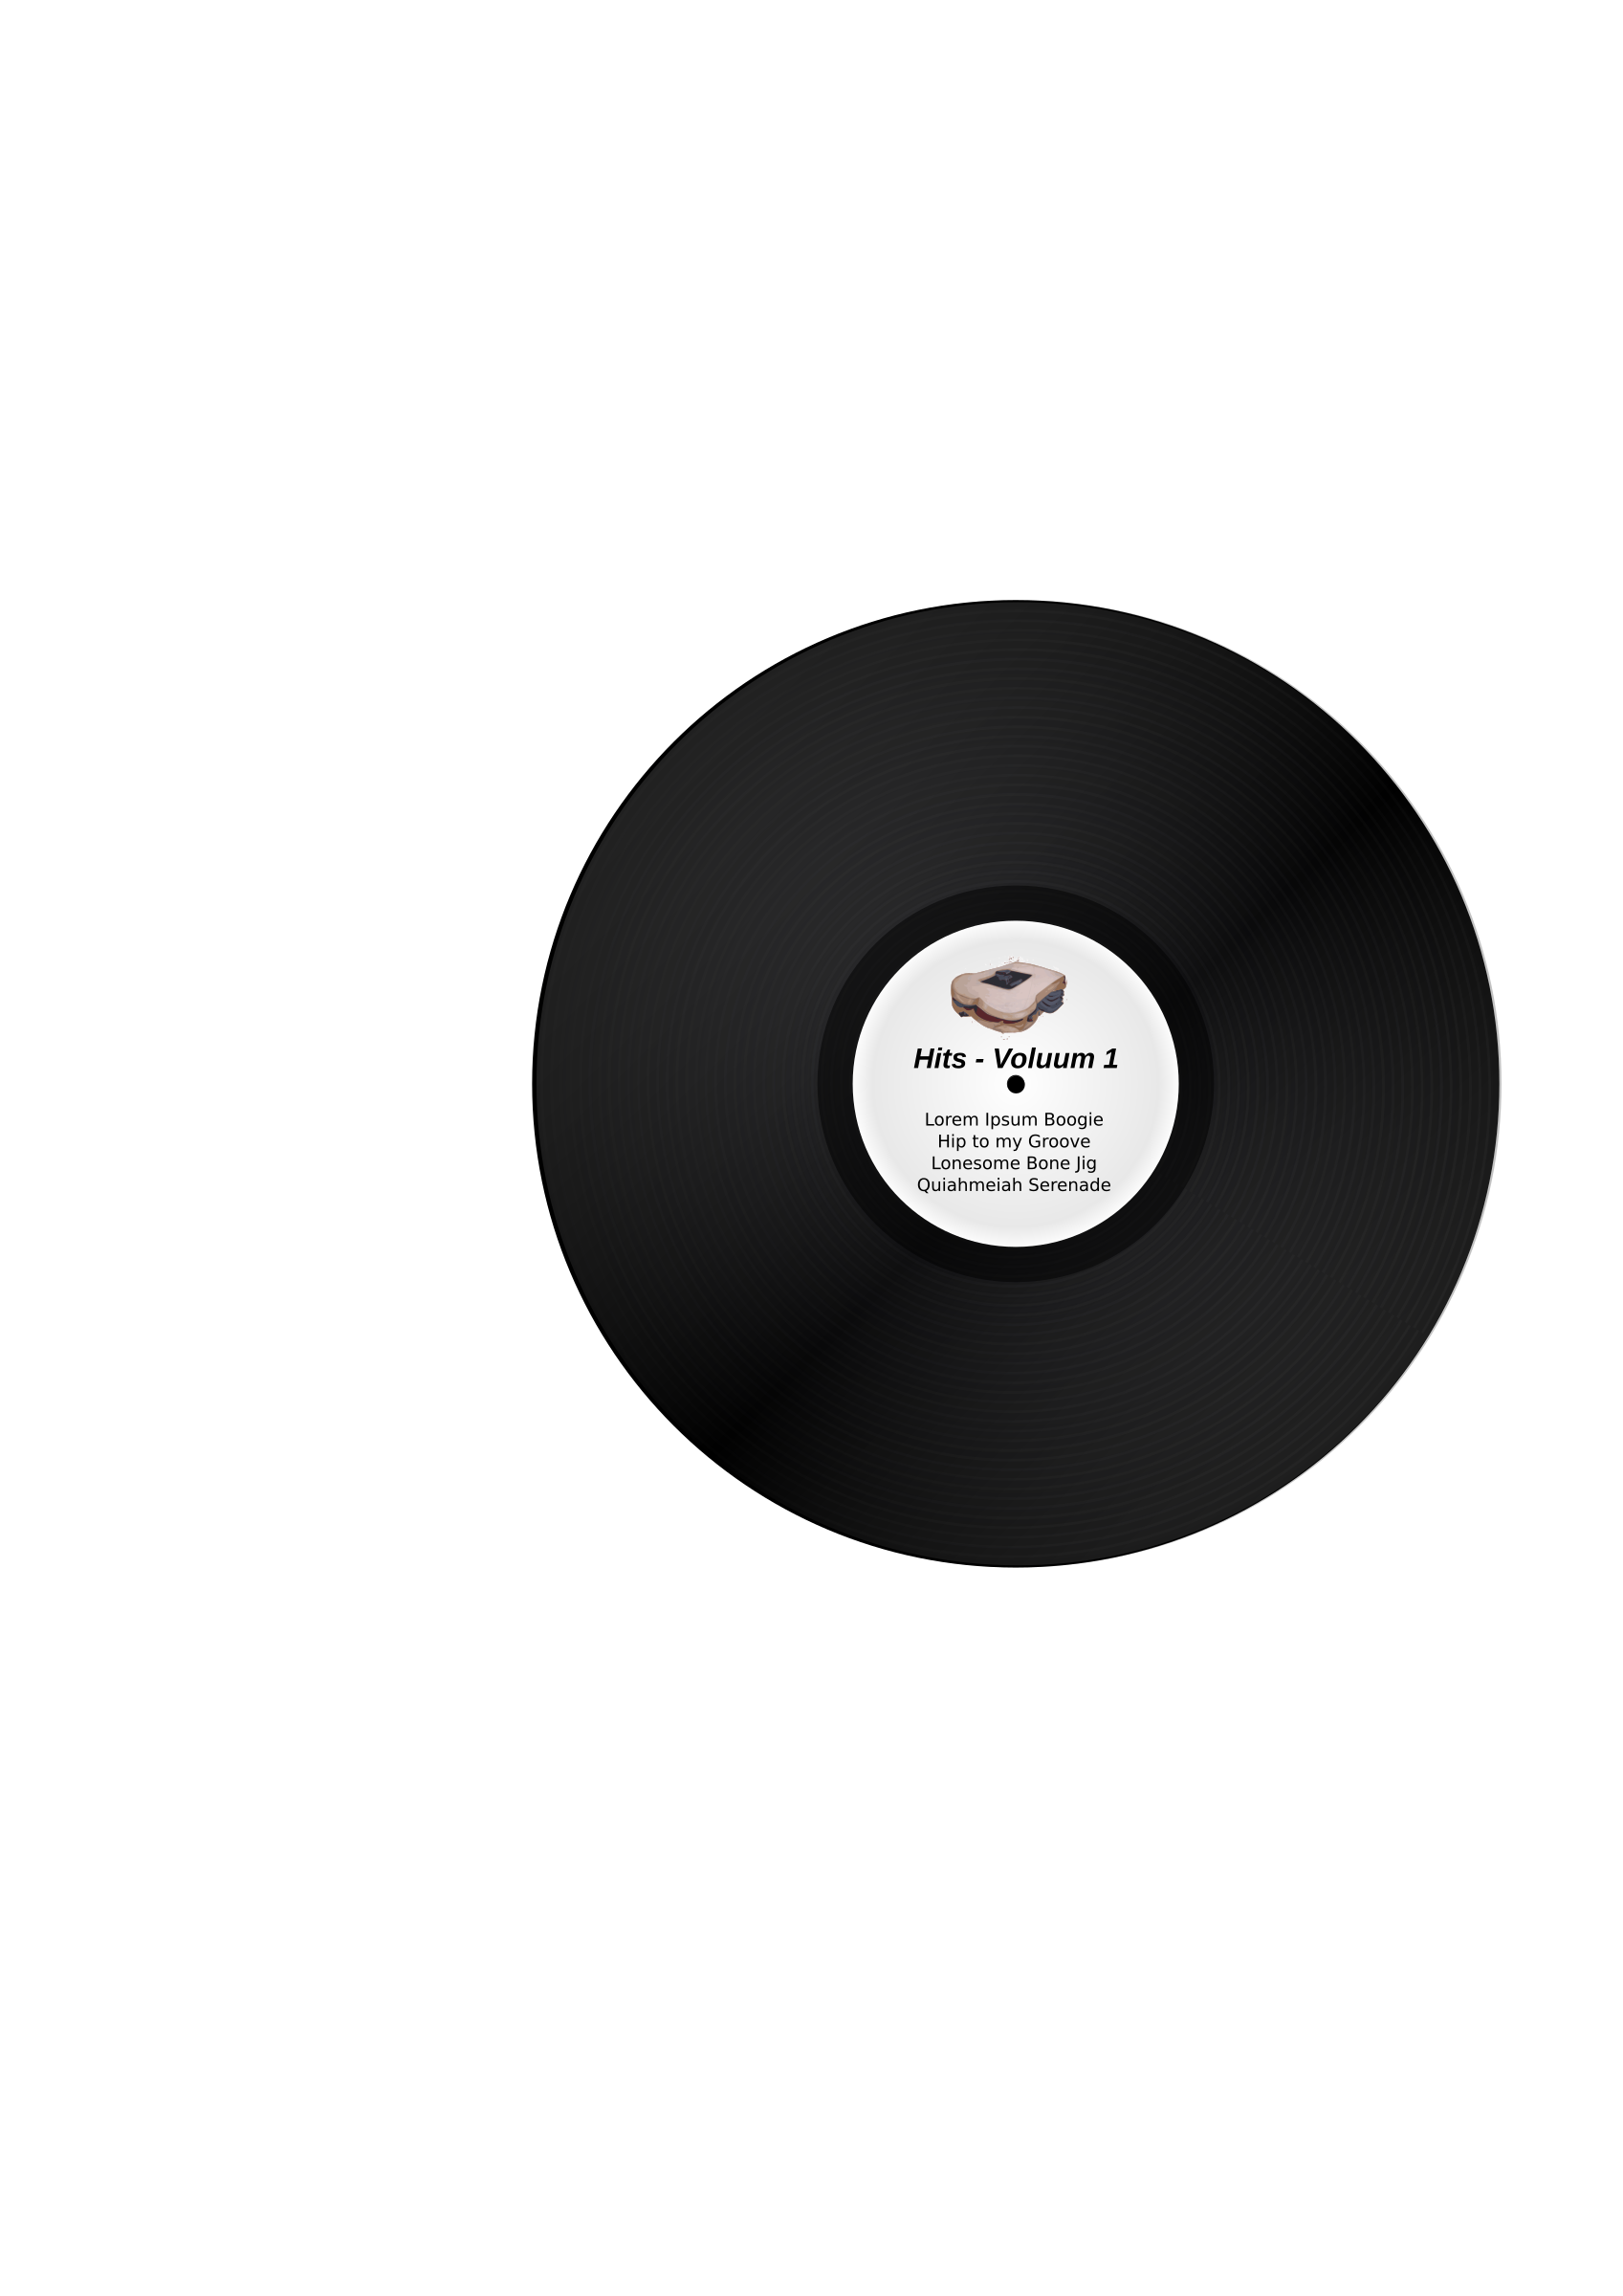 Vinyl lp album big. Record clipart small